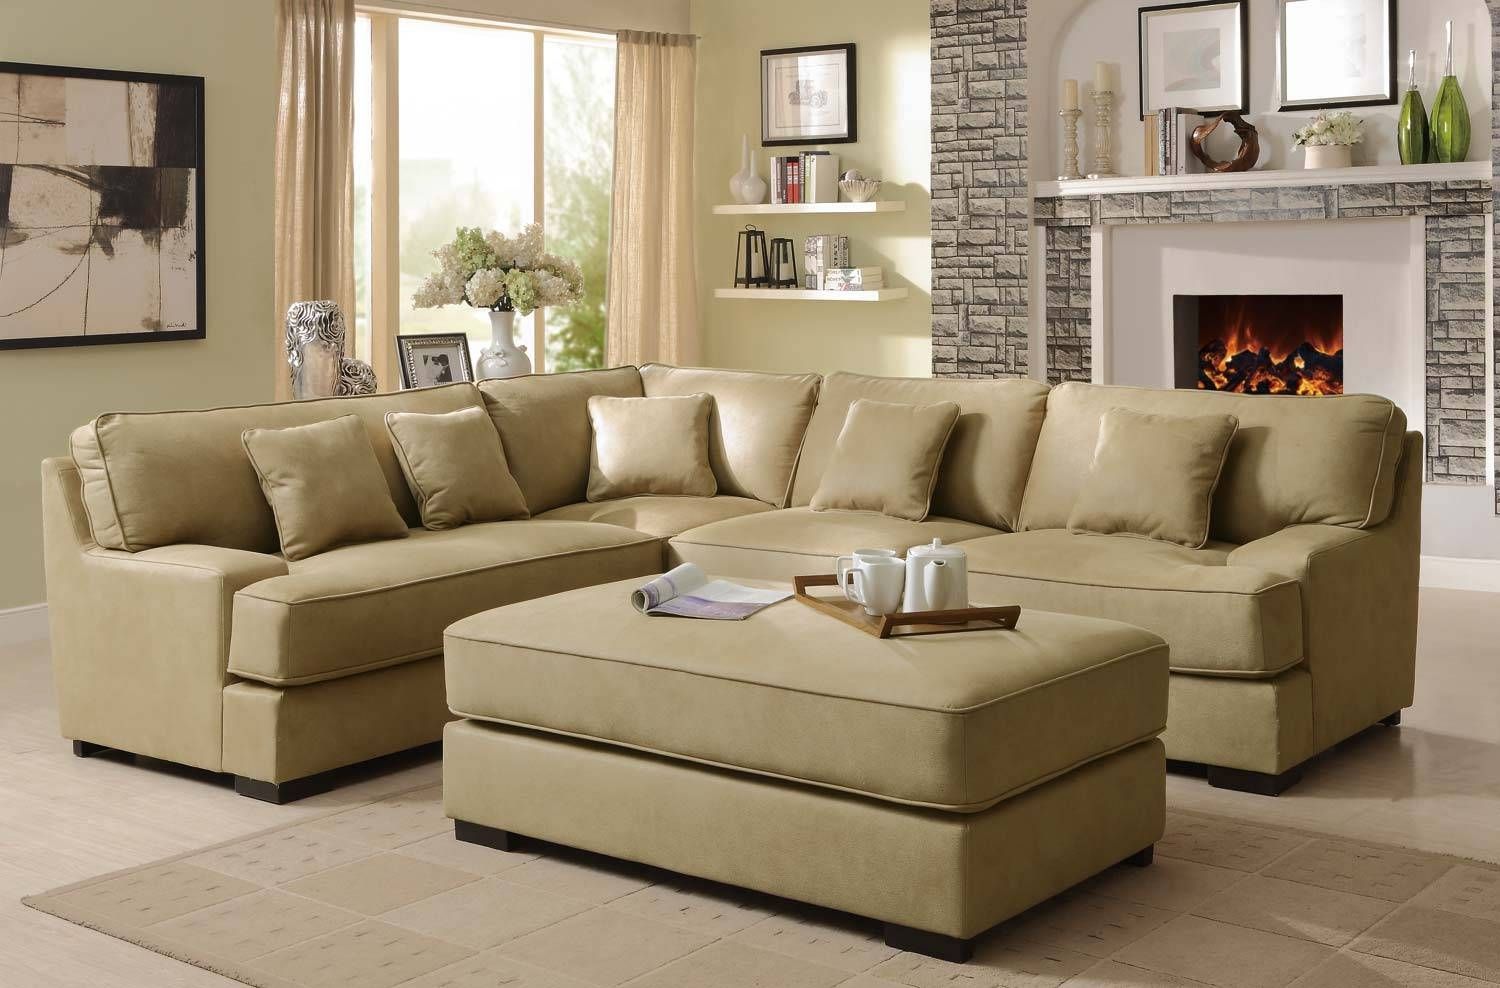 View Modern Cream Colour Sofa Set Background Home Inspirations